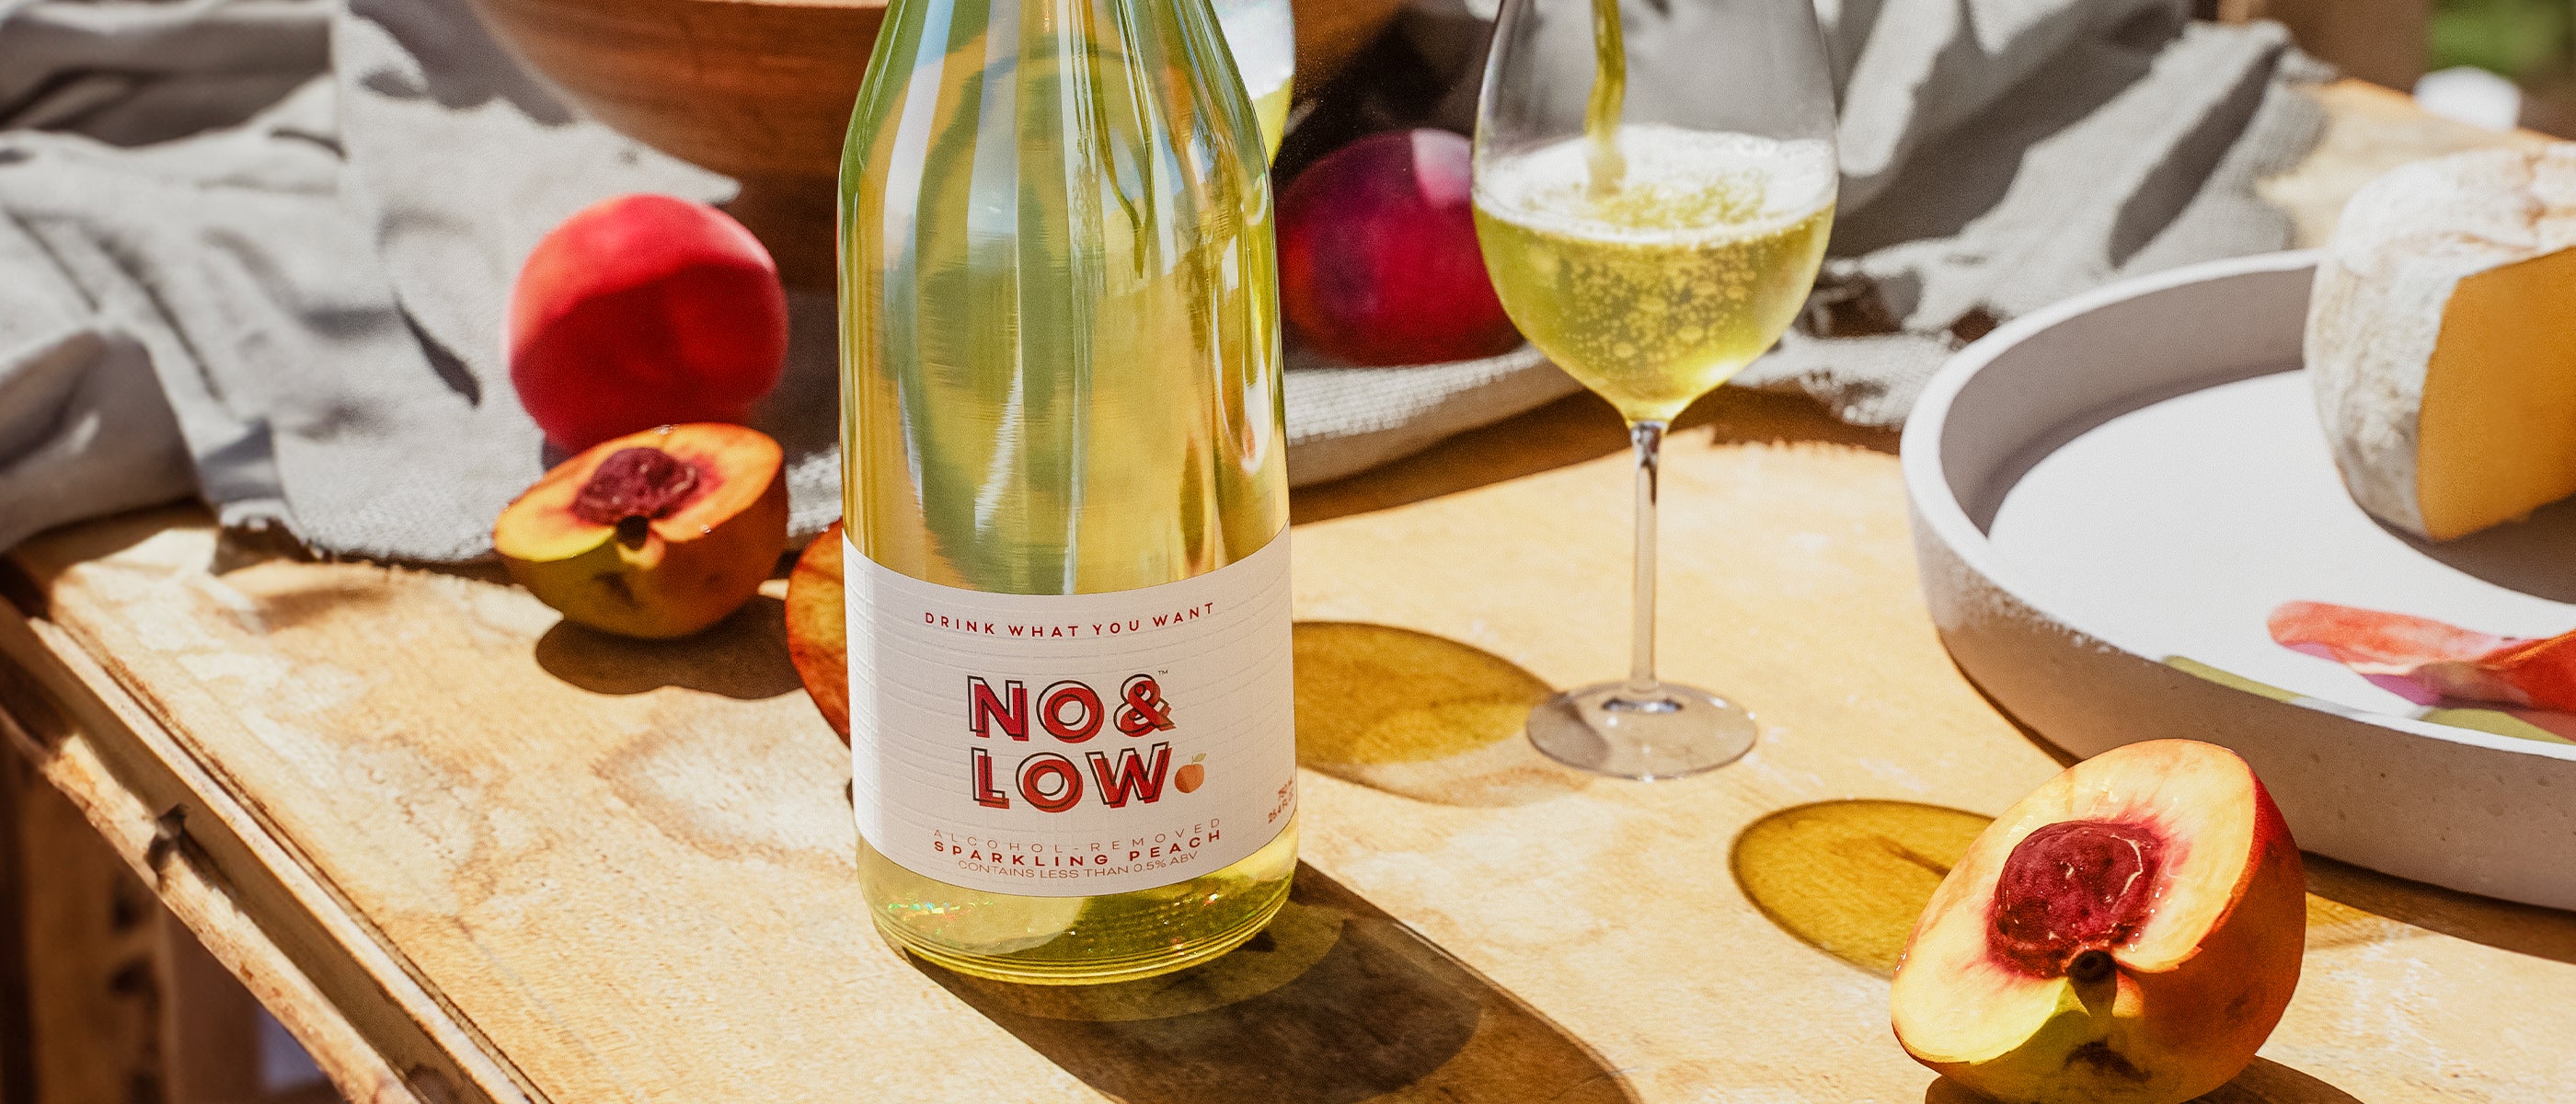 No & Low non-alcoholic peach wine